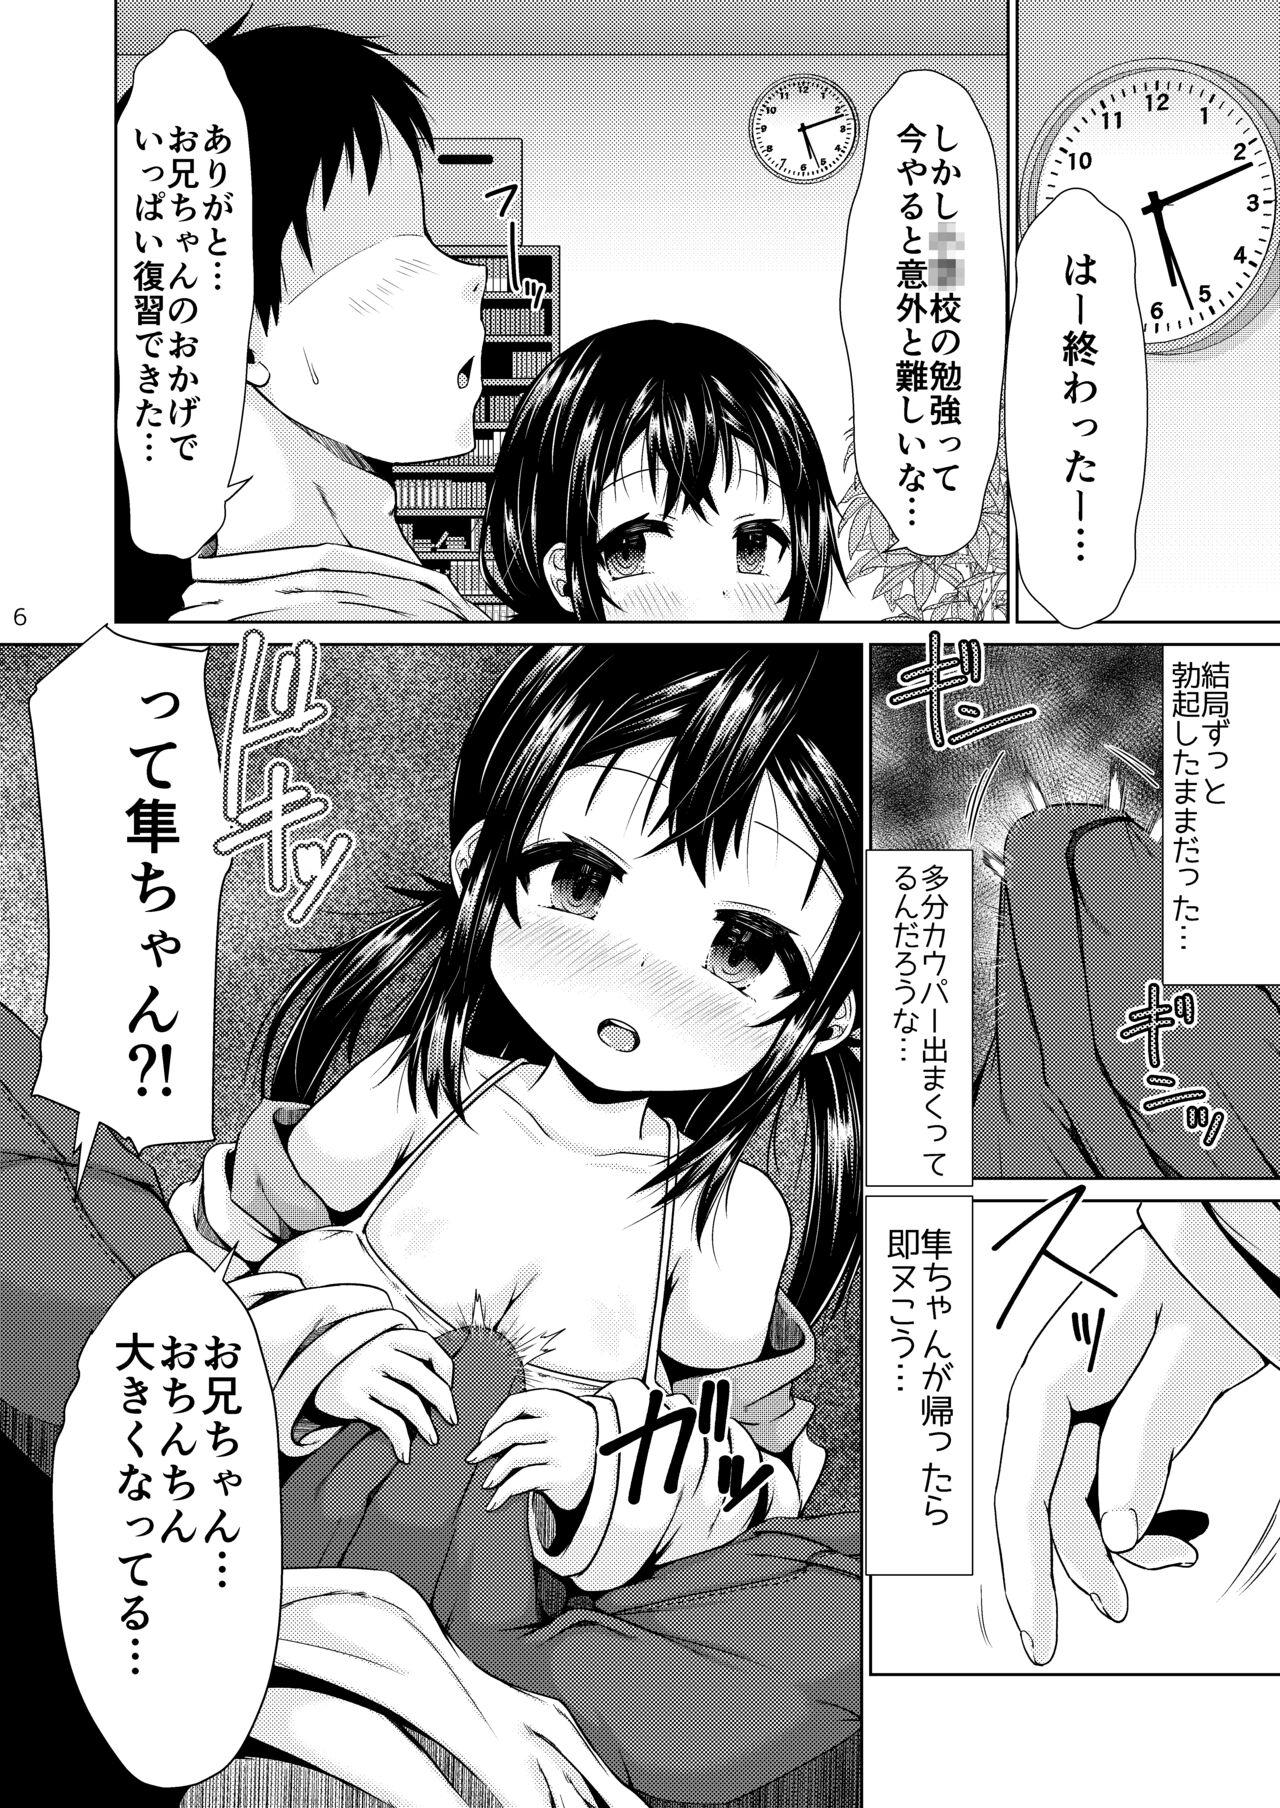 Shemale Otonari no J ￮ ga nani o kangae teru ka wakaranai kudan. - Original Roundass - Page 5